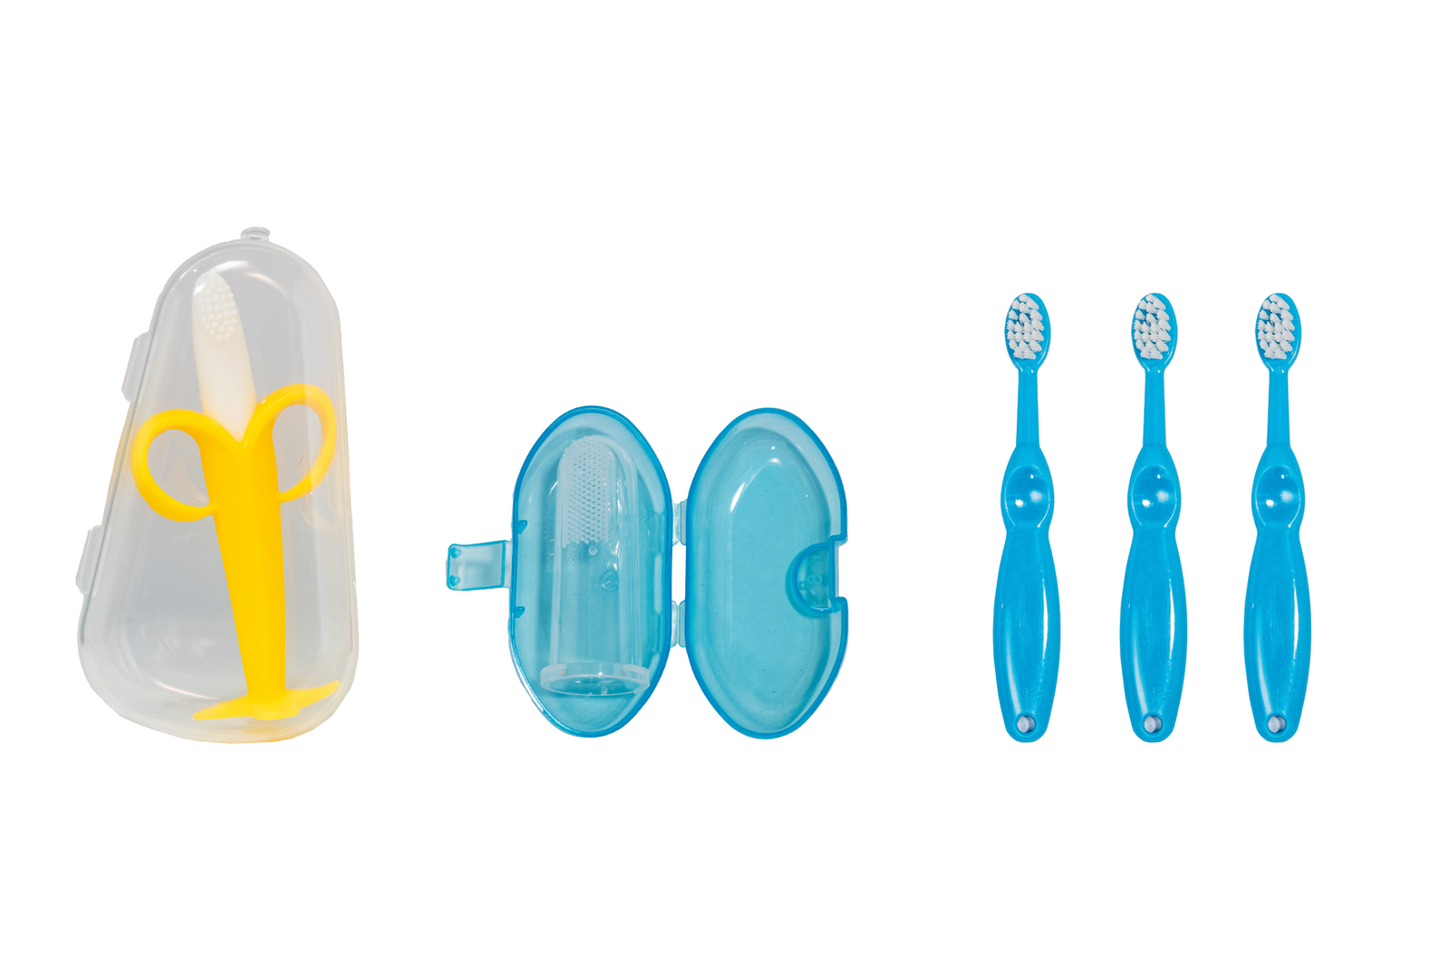 Sanitral Toothbrush Kit- Blue 0-2 Year Set of 3